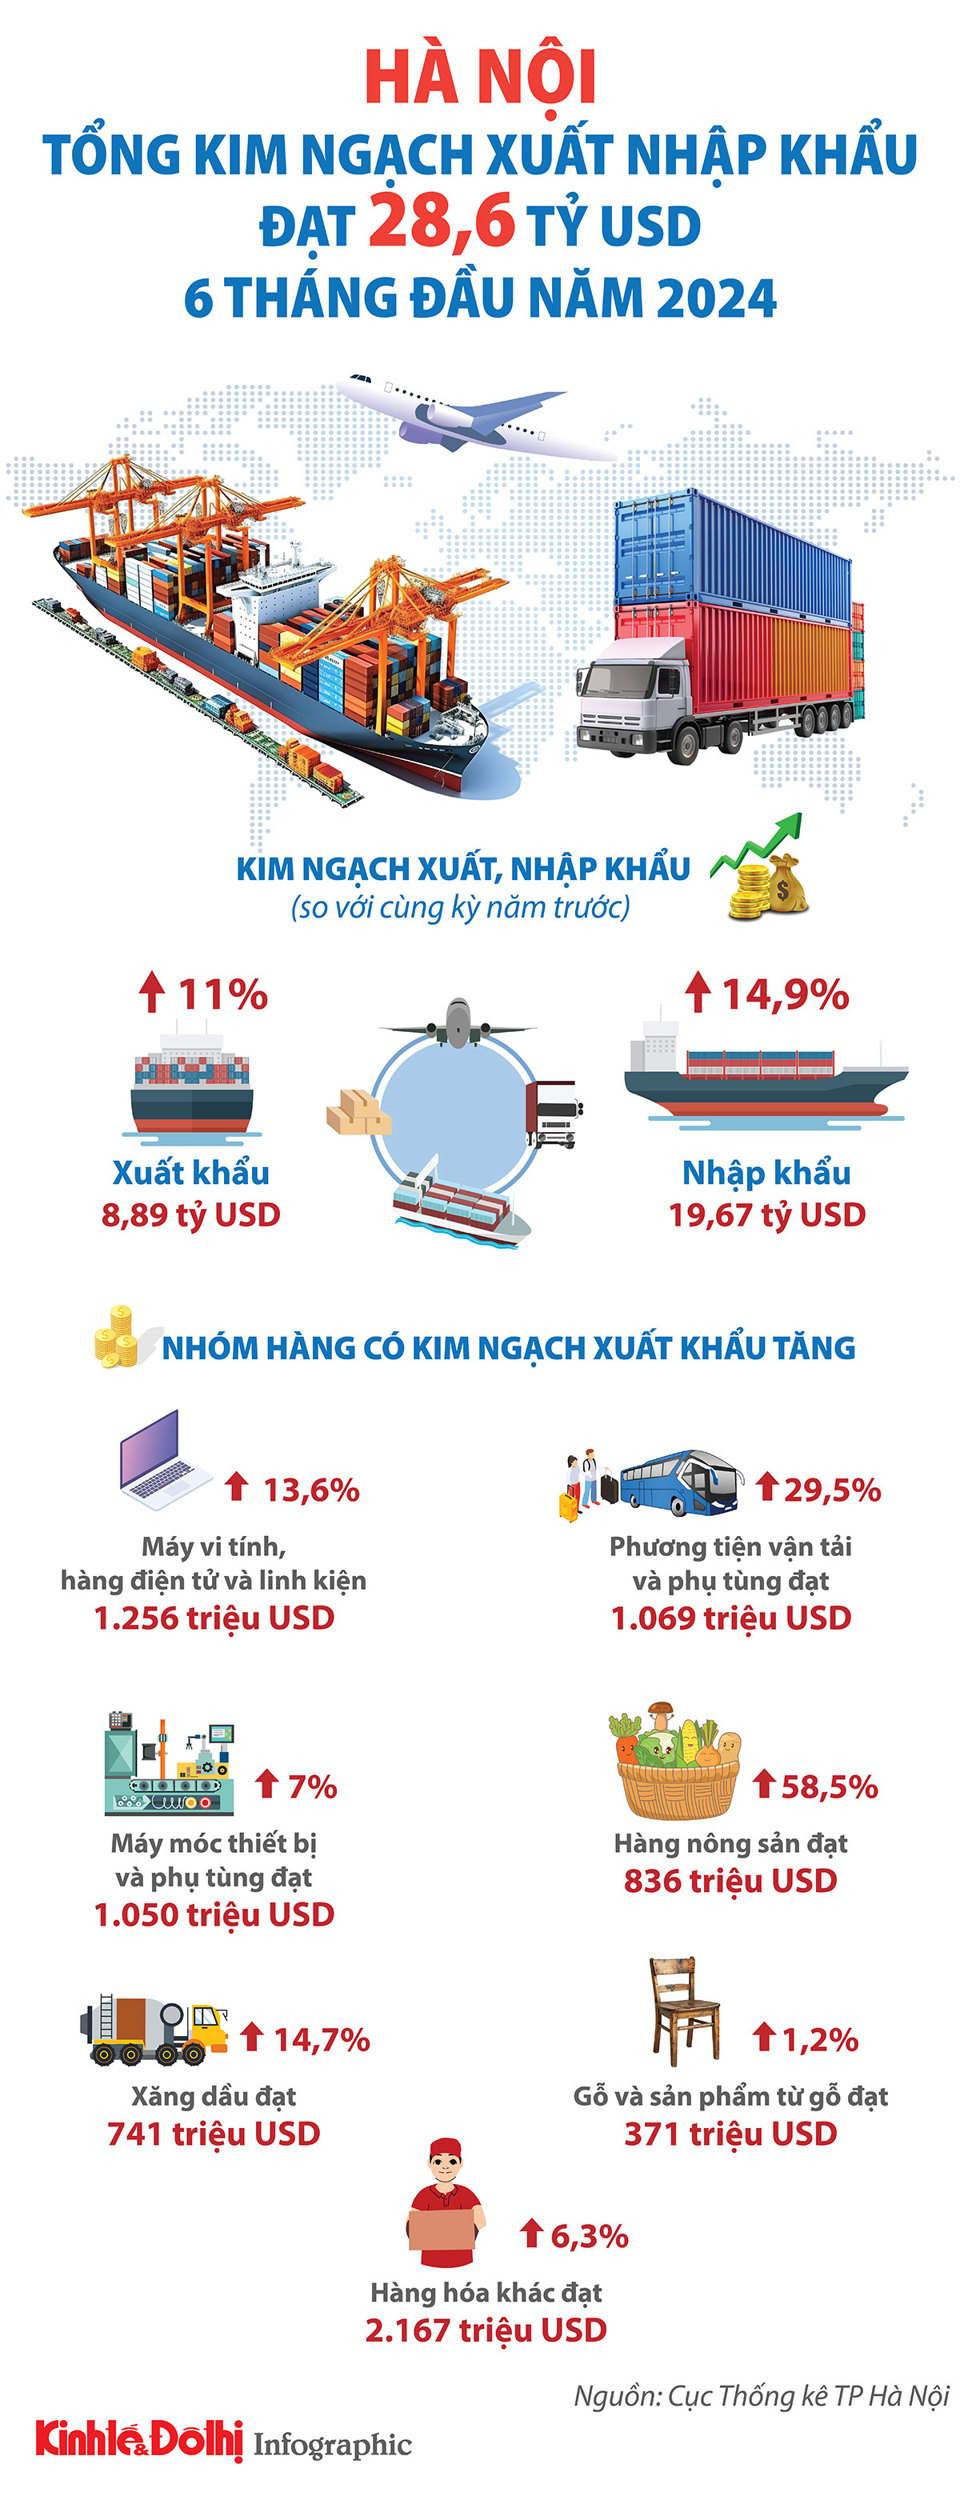 Hà Nội: 6 tháng năm 2024, tổng kim ngạch xuất nhập khẩu đạt 28,6 tỷ USD - Ảnh 1